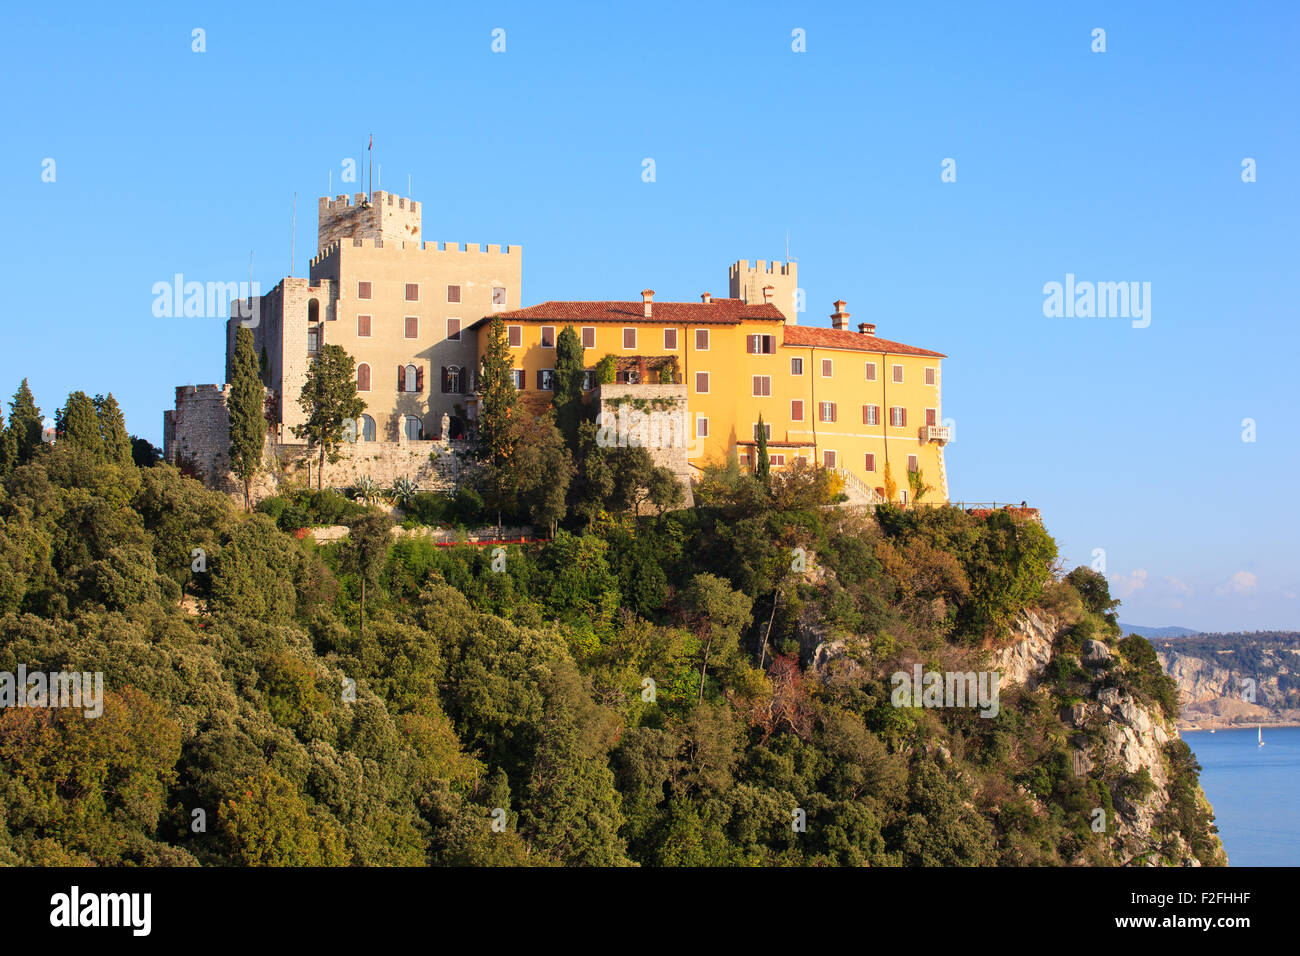 Vue sur le château de Duino en Italie Banque D'Images